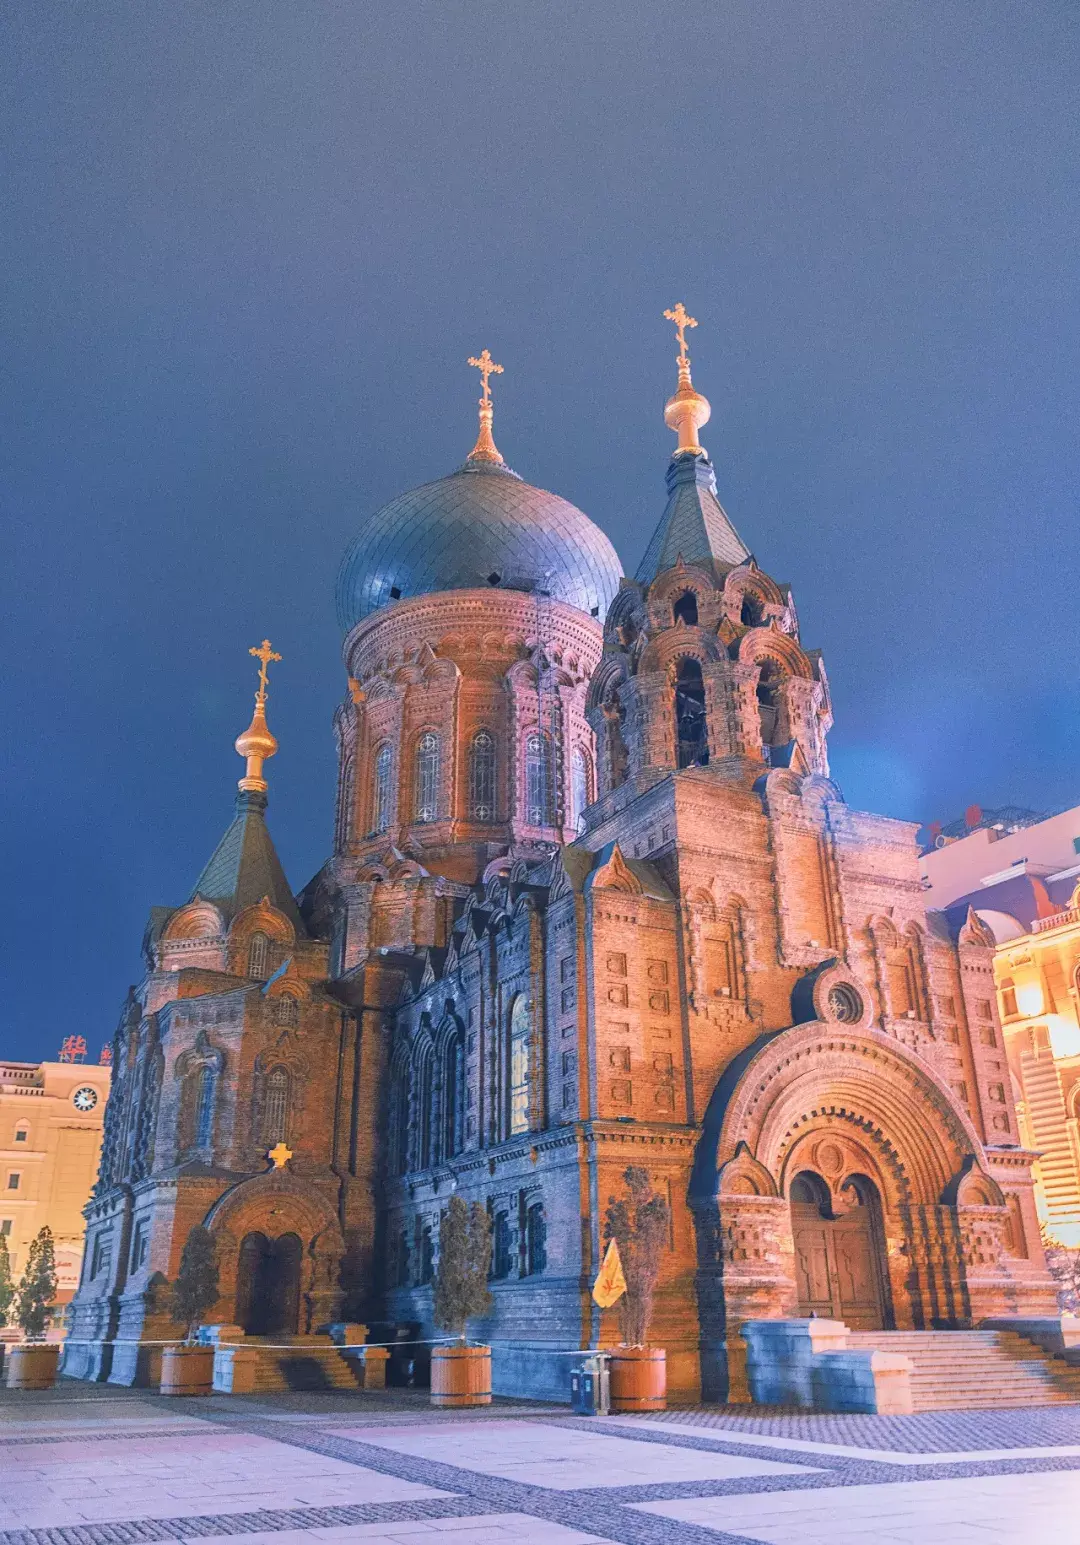 【携程攻略】哈尔滨圣索菲亚大教堂景点,夜景非常漂亮，我喜欢摄影，绕着教堂拍了两小时。广场有喷泉，还有高…